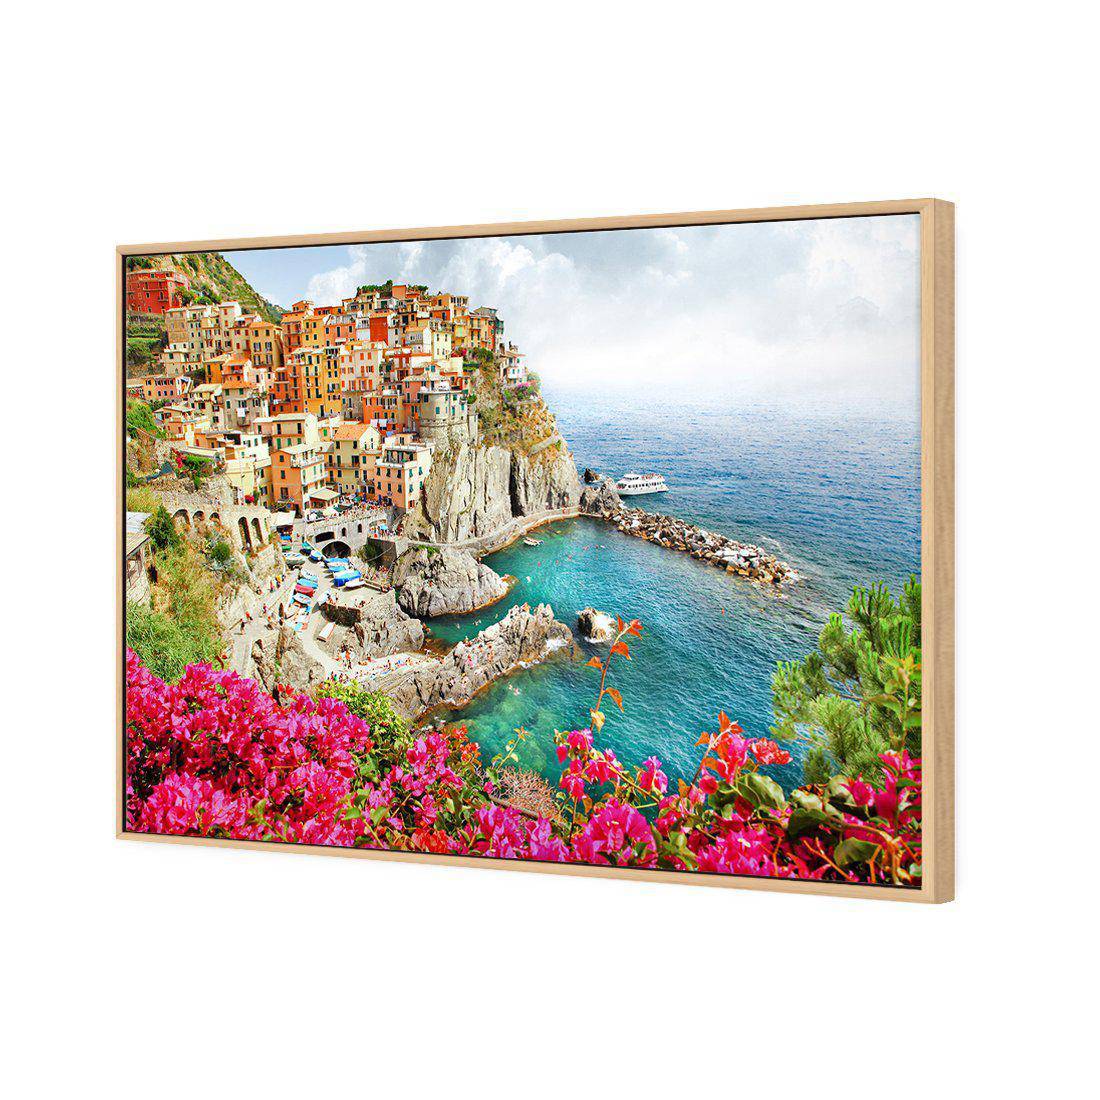 Cinque Terre in Italy Canvas Art-Canvas-Wall Art Designs-45x30cm-Canvas - Oak Frame-Wall Art Designs